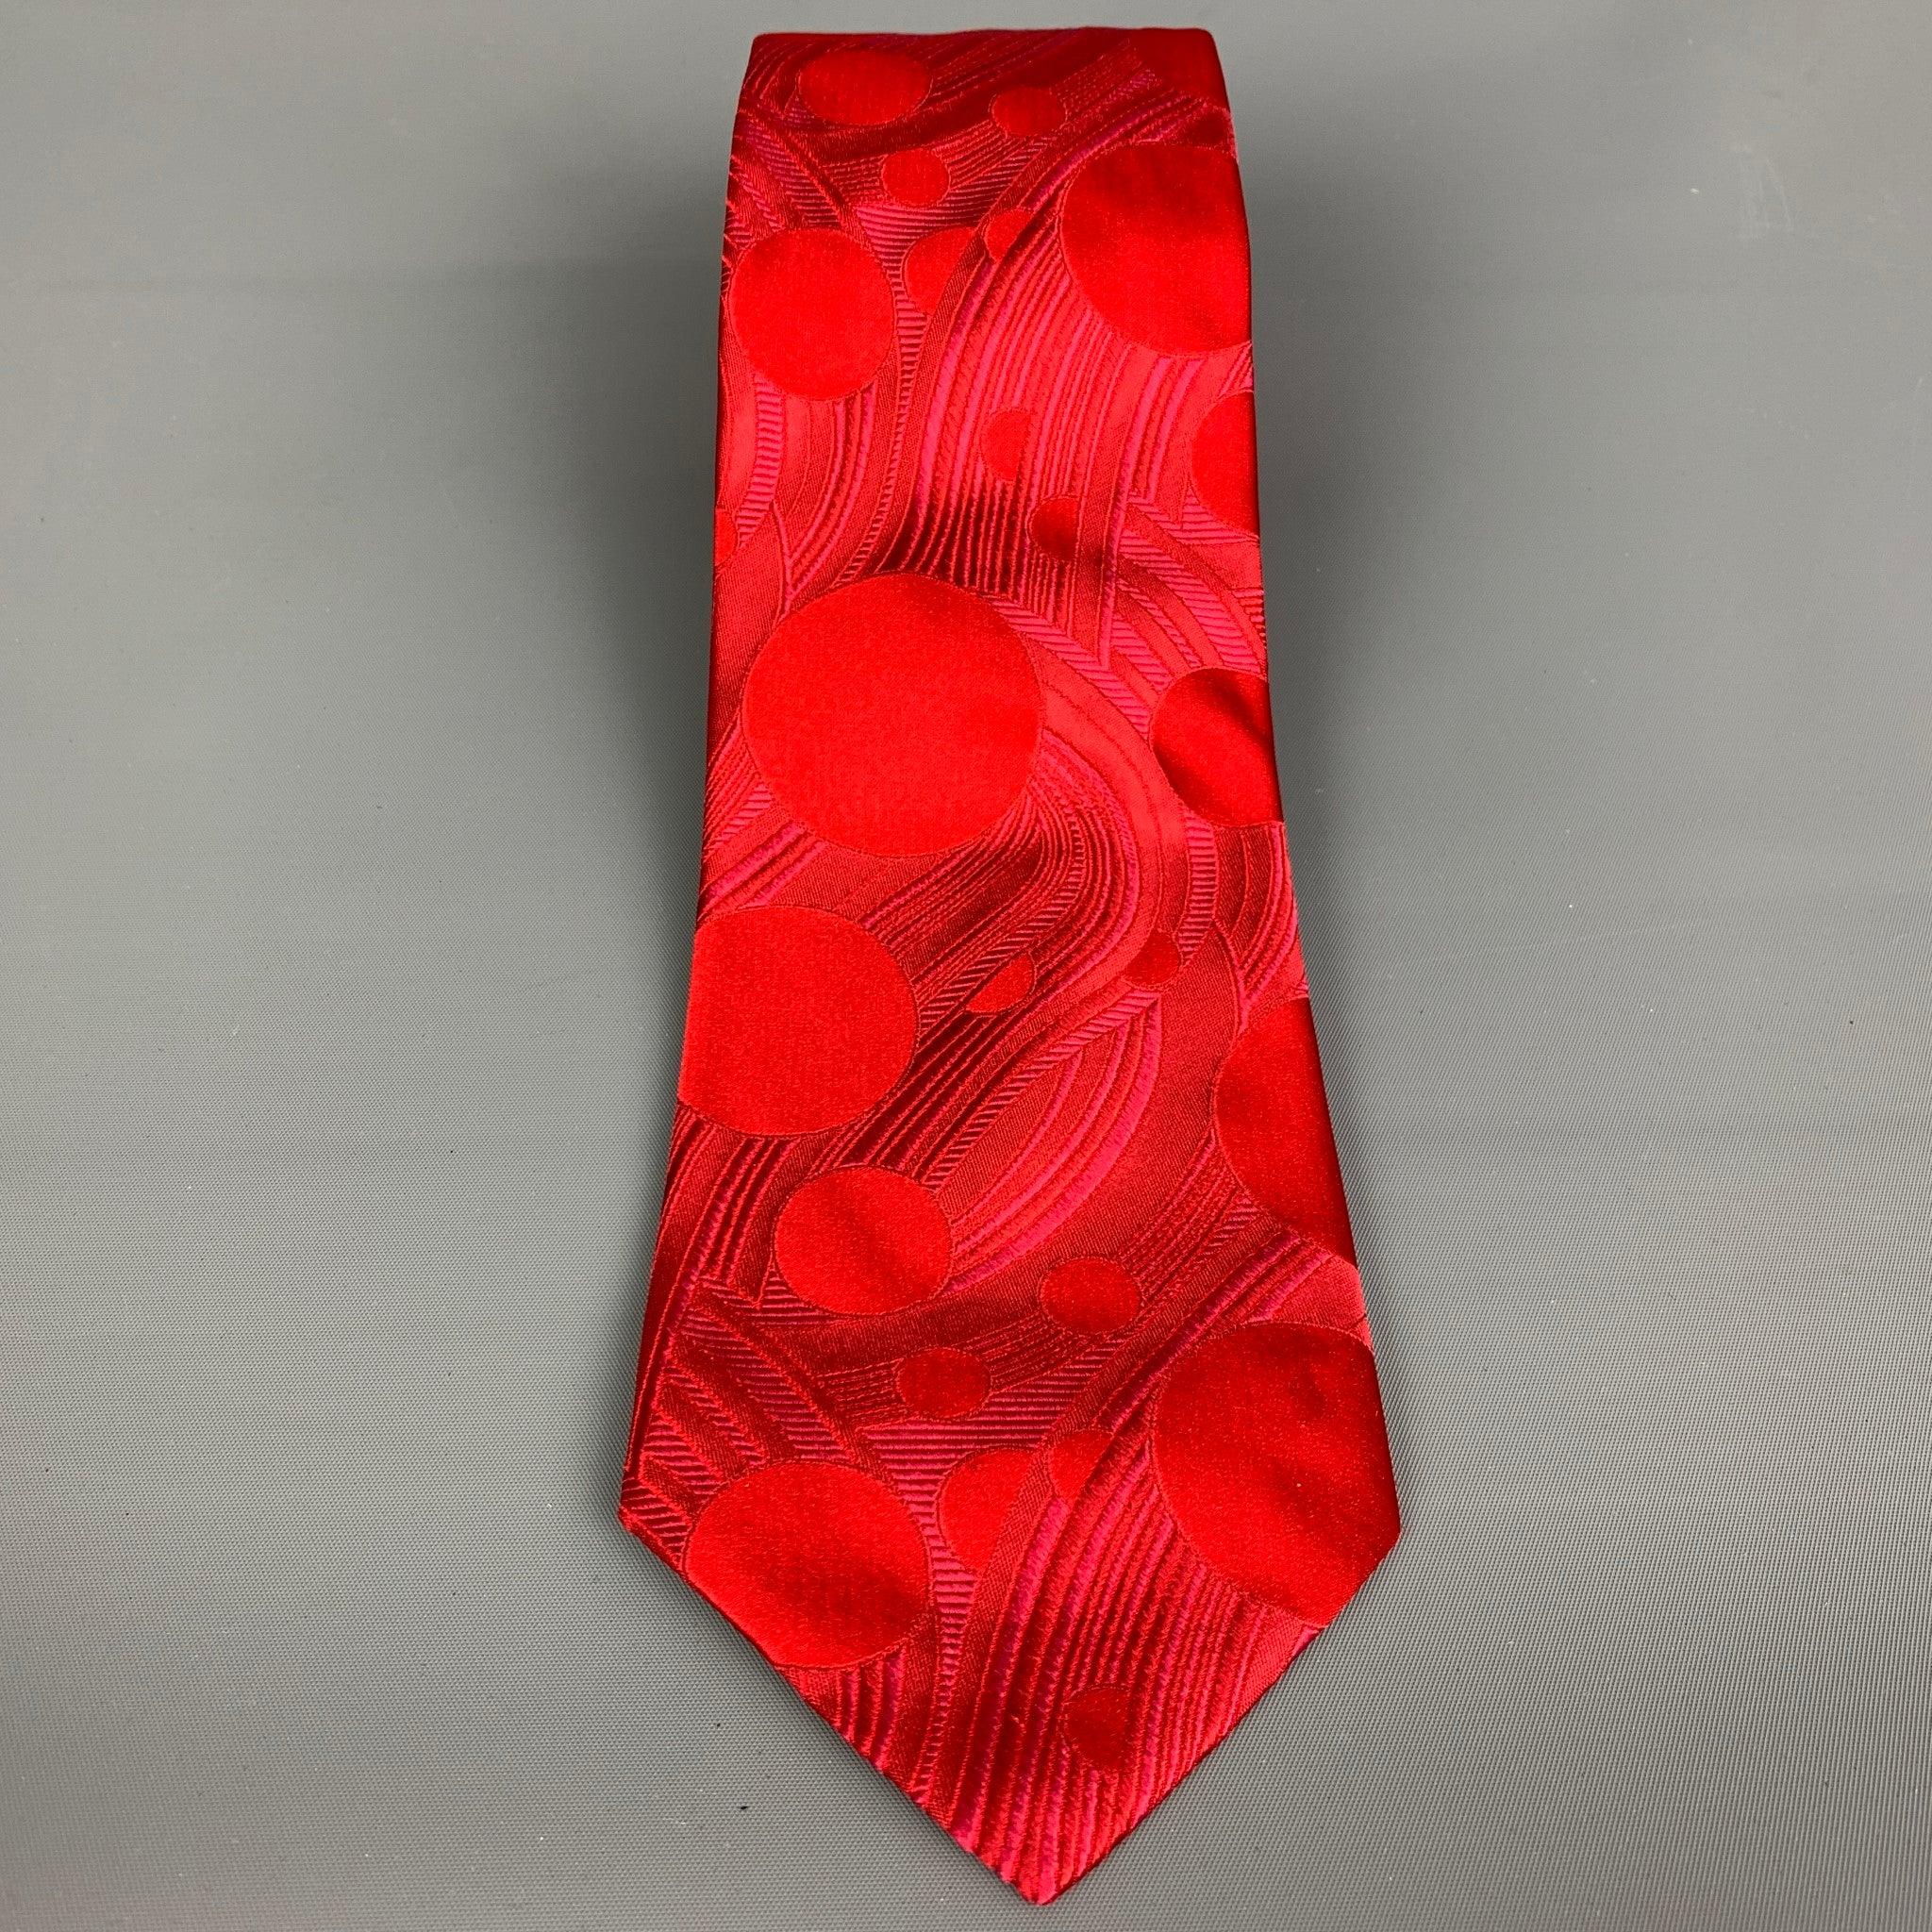 La cravate PAUL SMITH est en jacquard de soie rouge à imprimé abstrait. Fabriqué en Italie. Très bon état. Largeur : 4 pouces Longueur : 62 pouces  

  
  
 
Référence Sui Generis : 103976
Catégorie : Cravate
Plus de détails
    
Marque :  PAUL